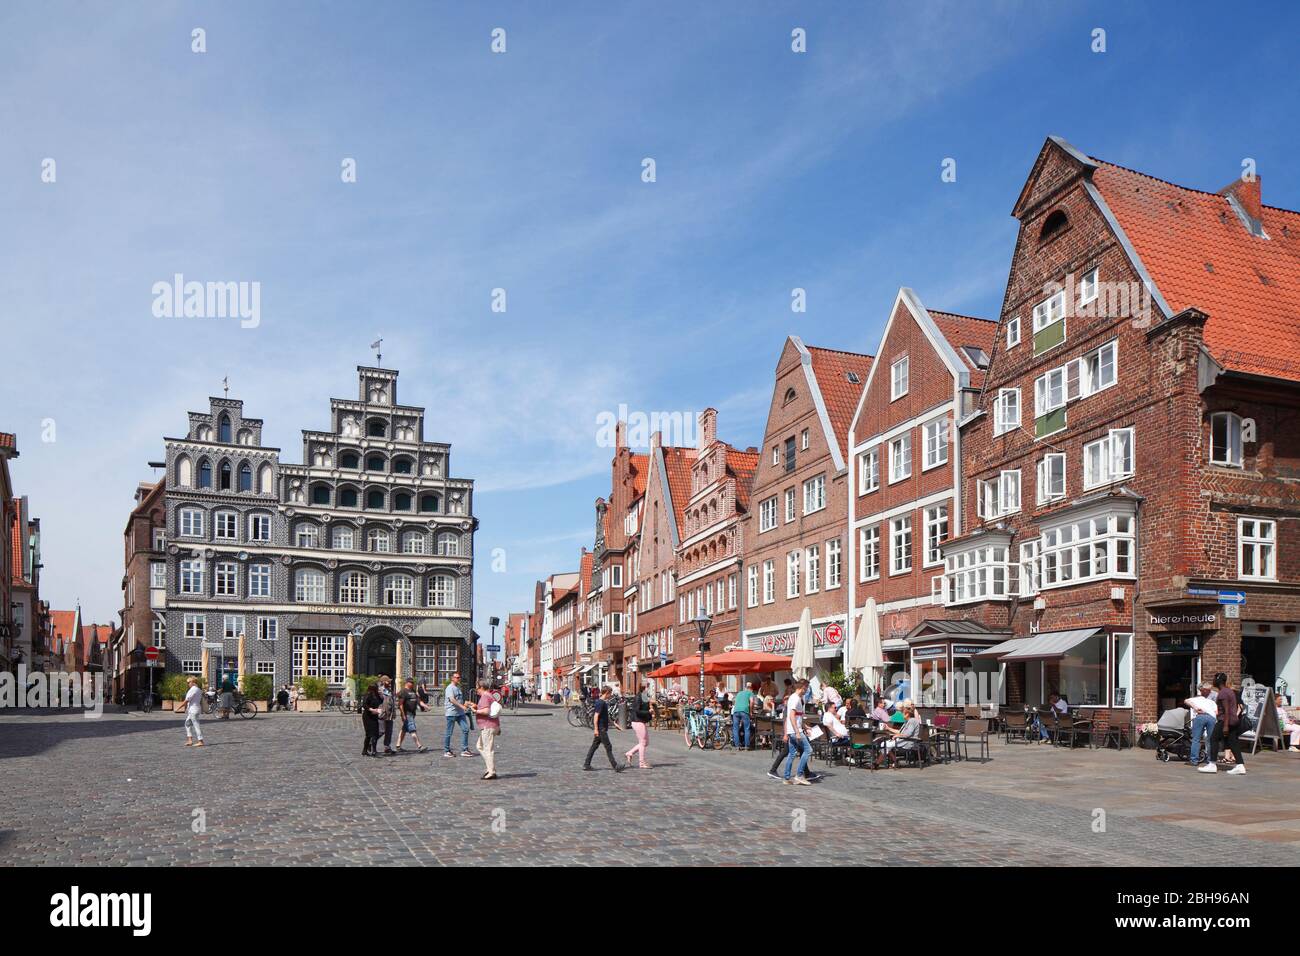 Haus Schütting, Historical Facades, Platz am Sande, Altstadt, Lüneburg, Niedersachsen, Deutschland, Europa Stock Photo